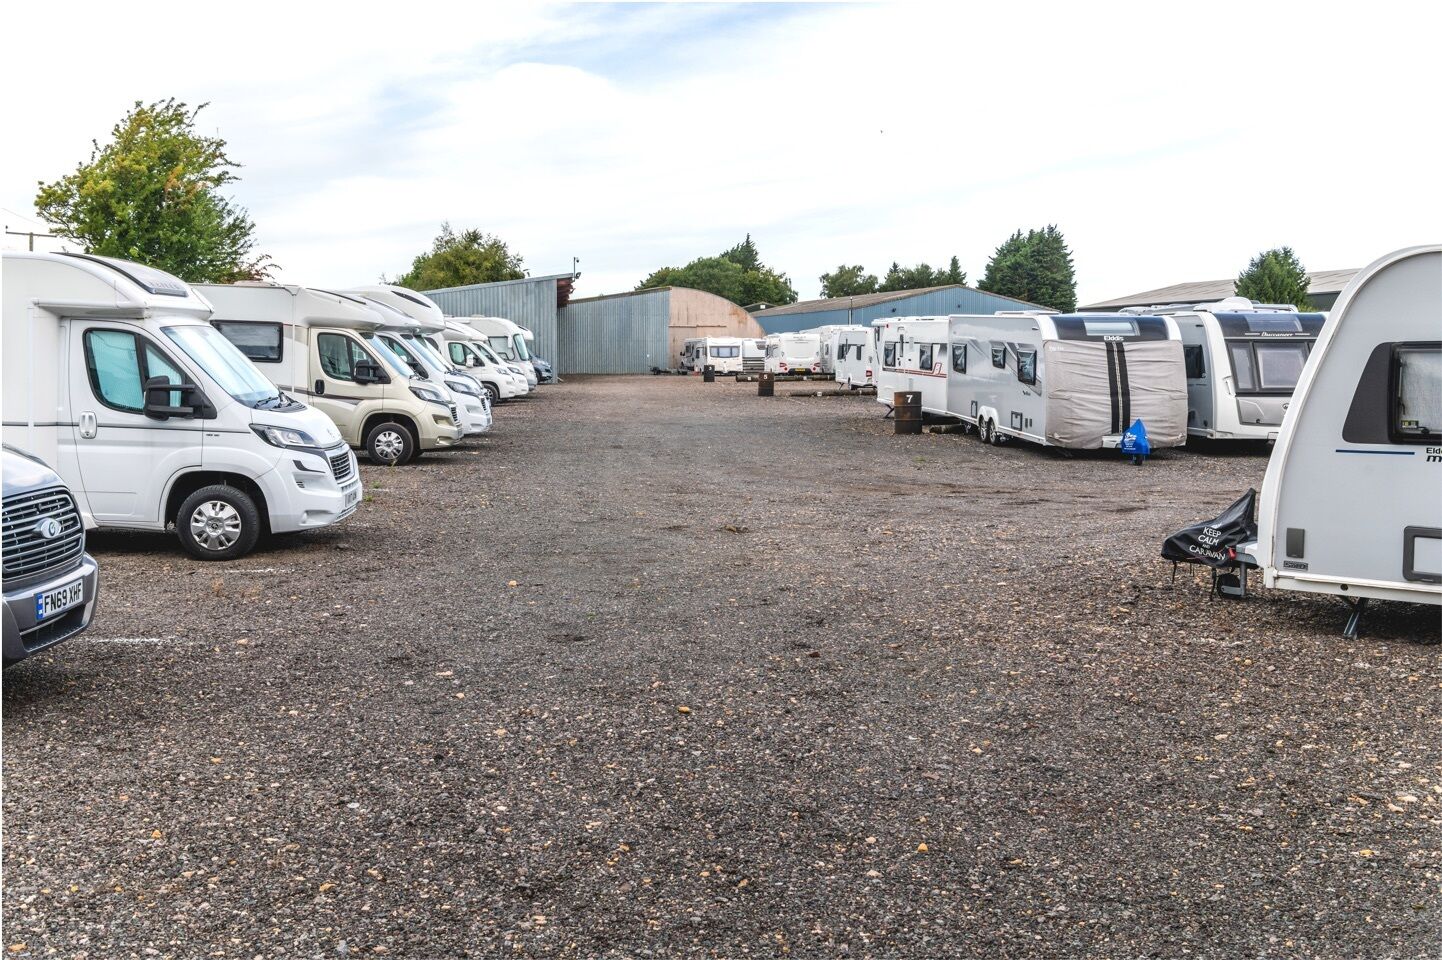 Caravans and motorhomes parked in storage